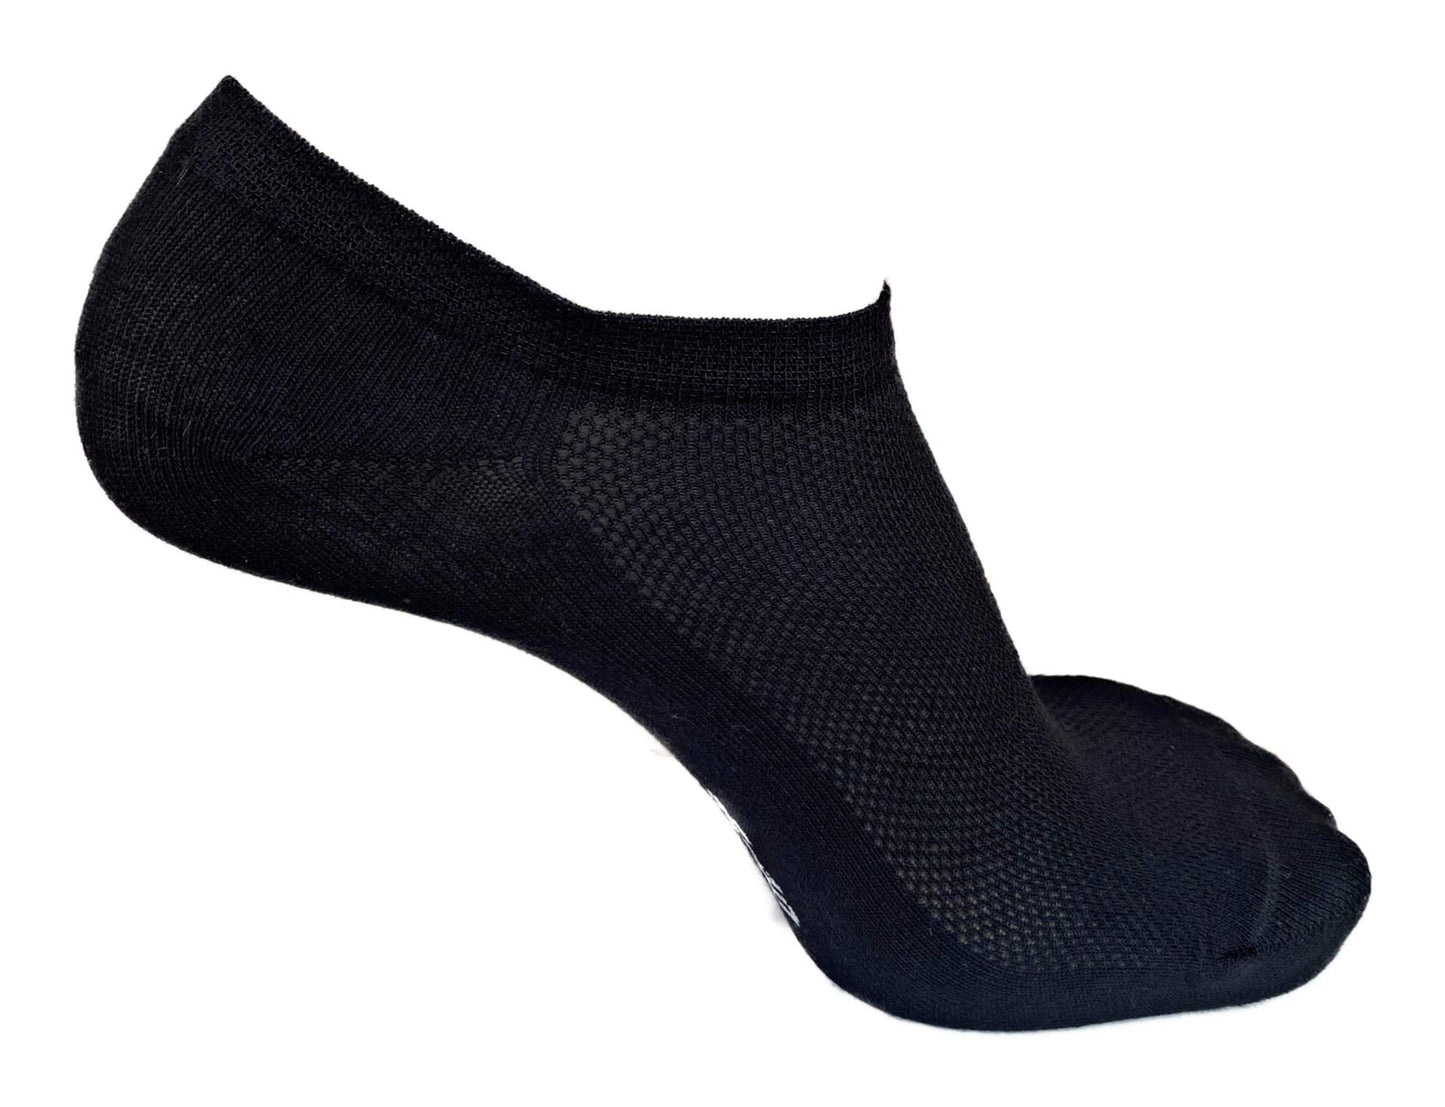 Lucchetti Socks Milano Fantasmini uomo donna cotone nero bianco grigio con silicone nel tallone 6 paia (41-46, NERO)